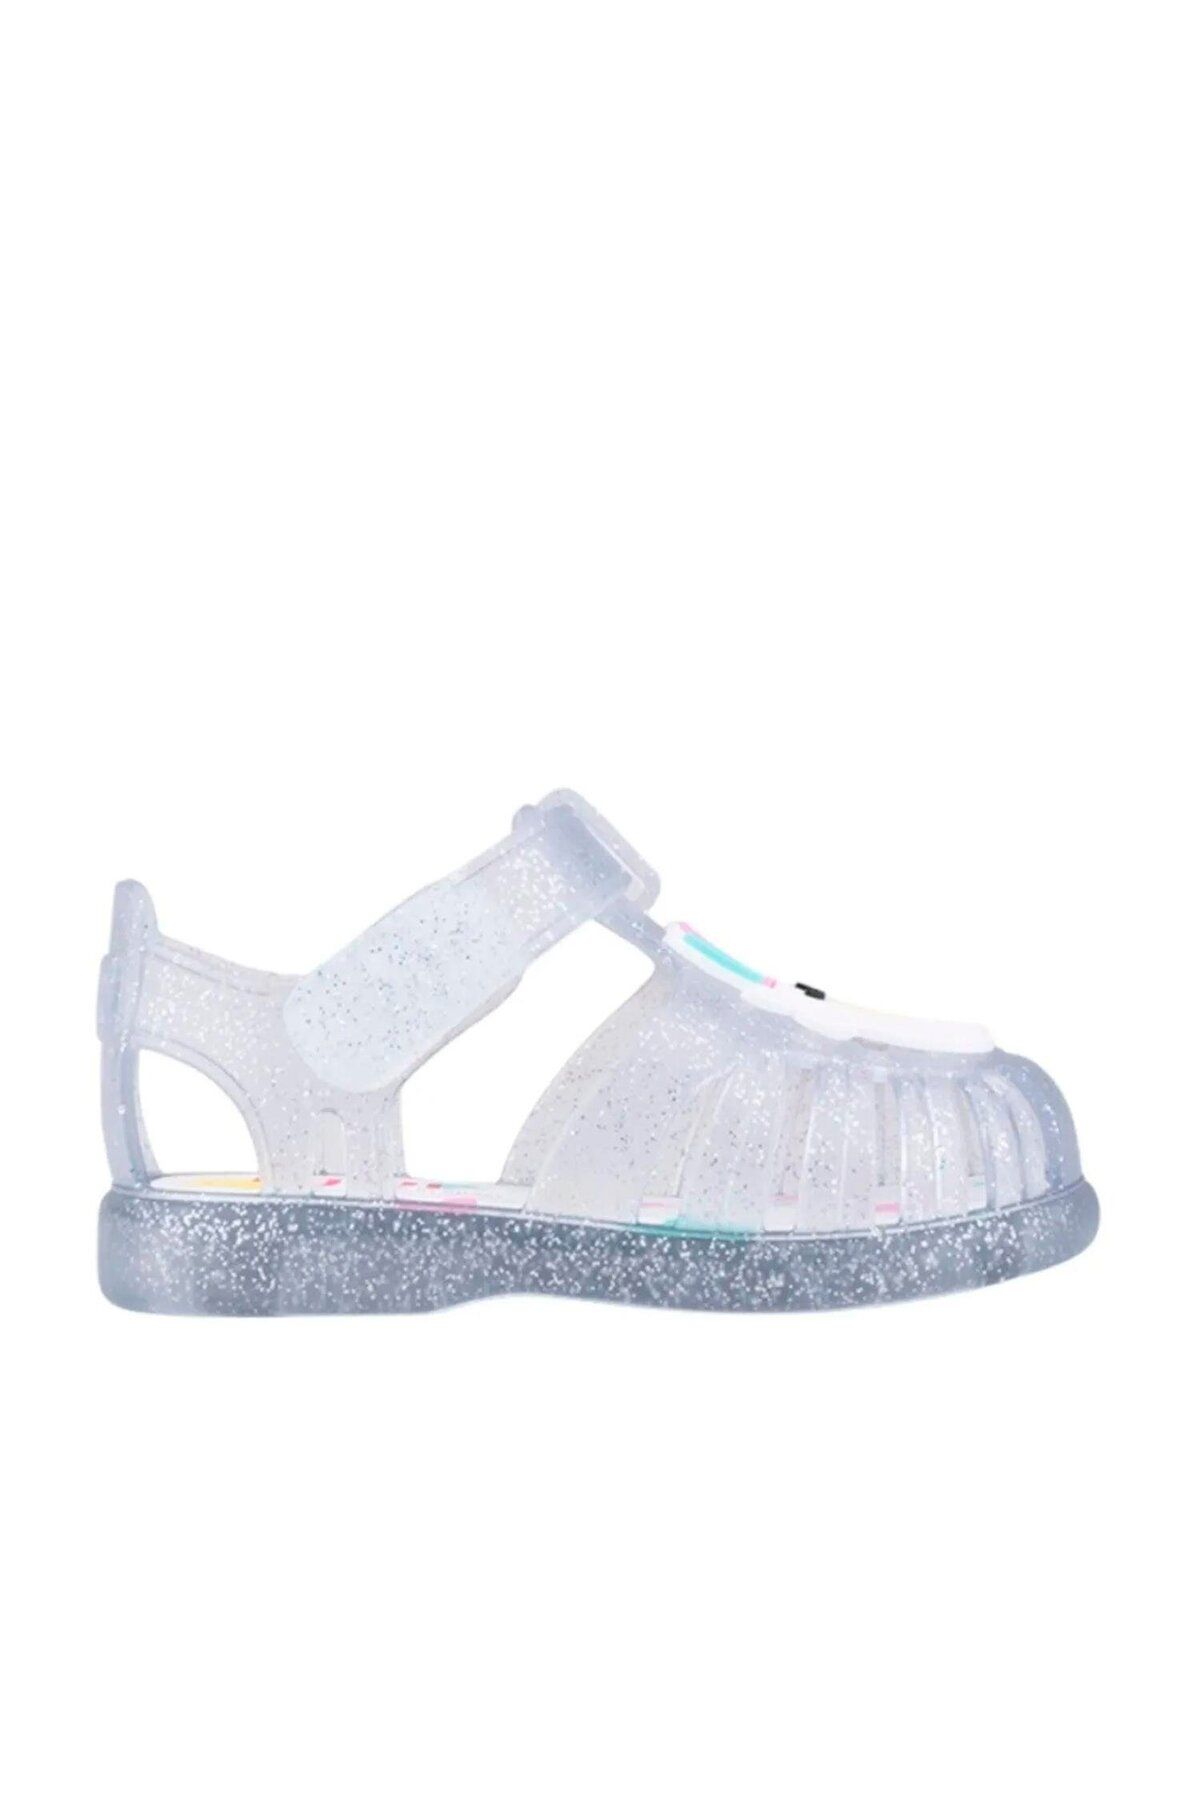 IGOR Çocuk Cirtli Sandalet S10309 Tobby Gloss Unicornio